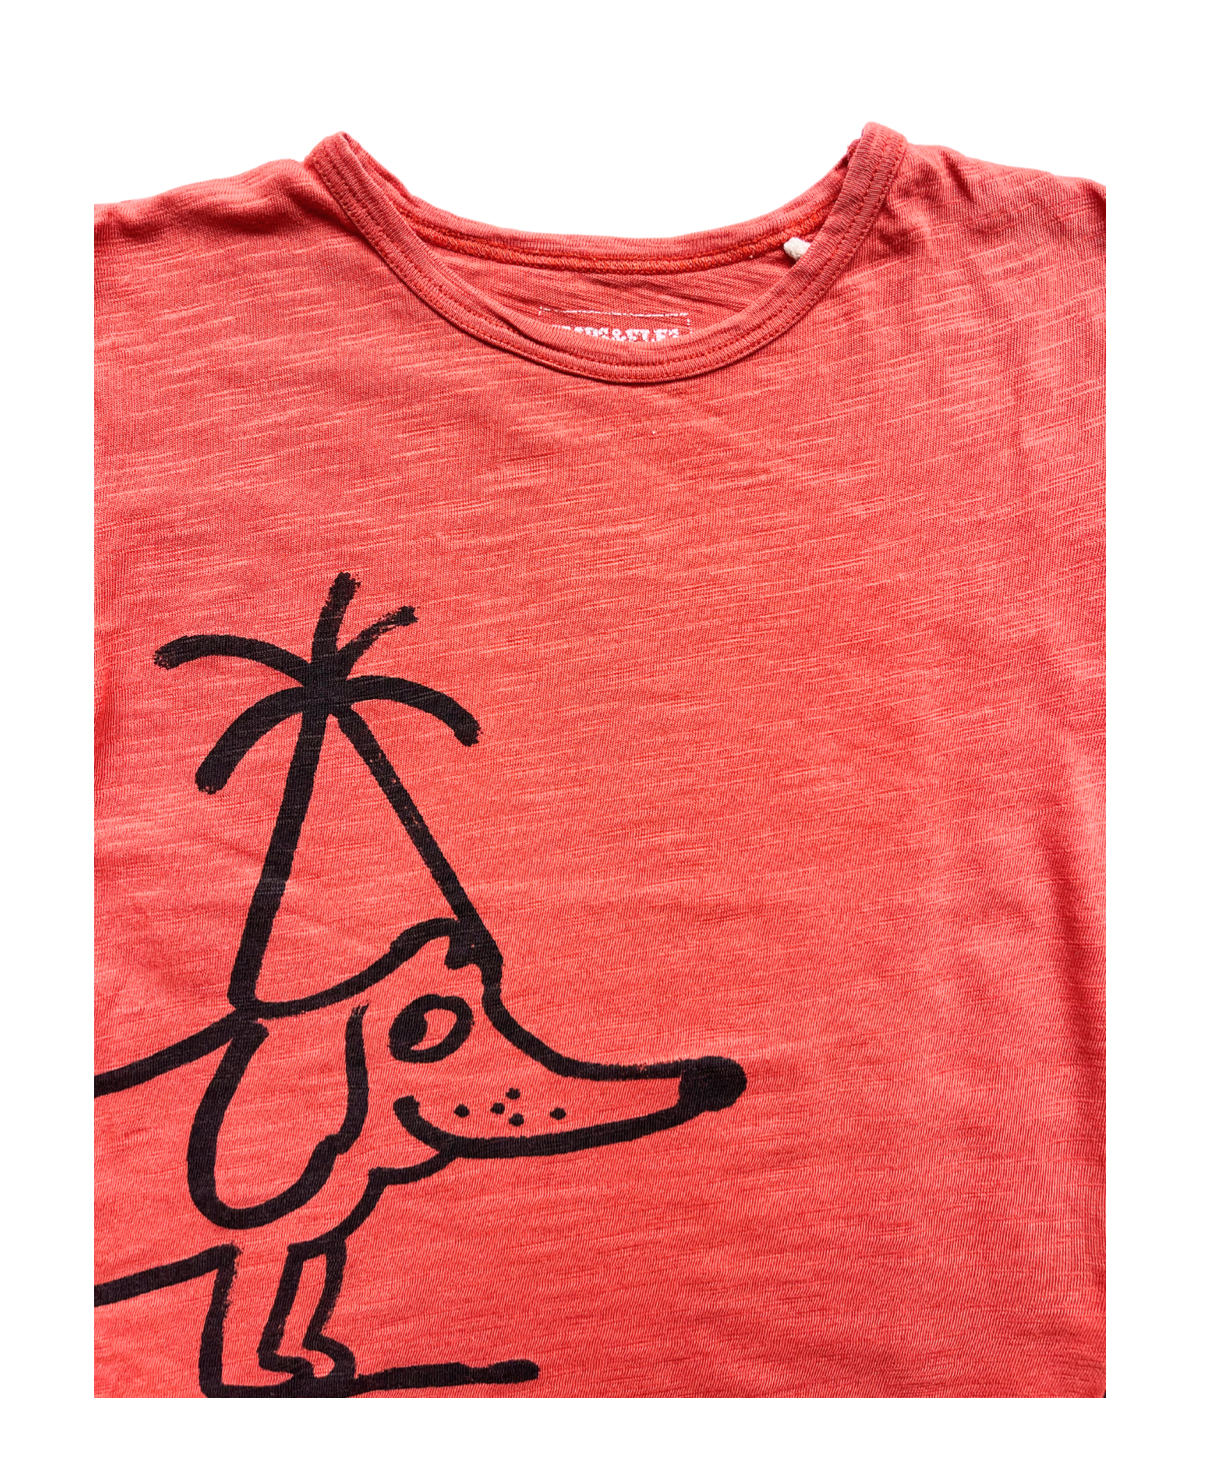 IMP’S & ELF’S - T-shirt rouge motif chien - 3 ans